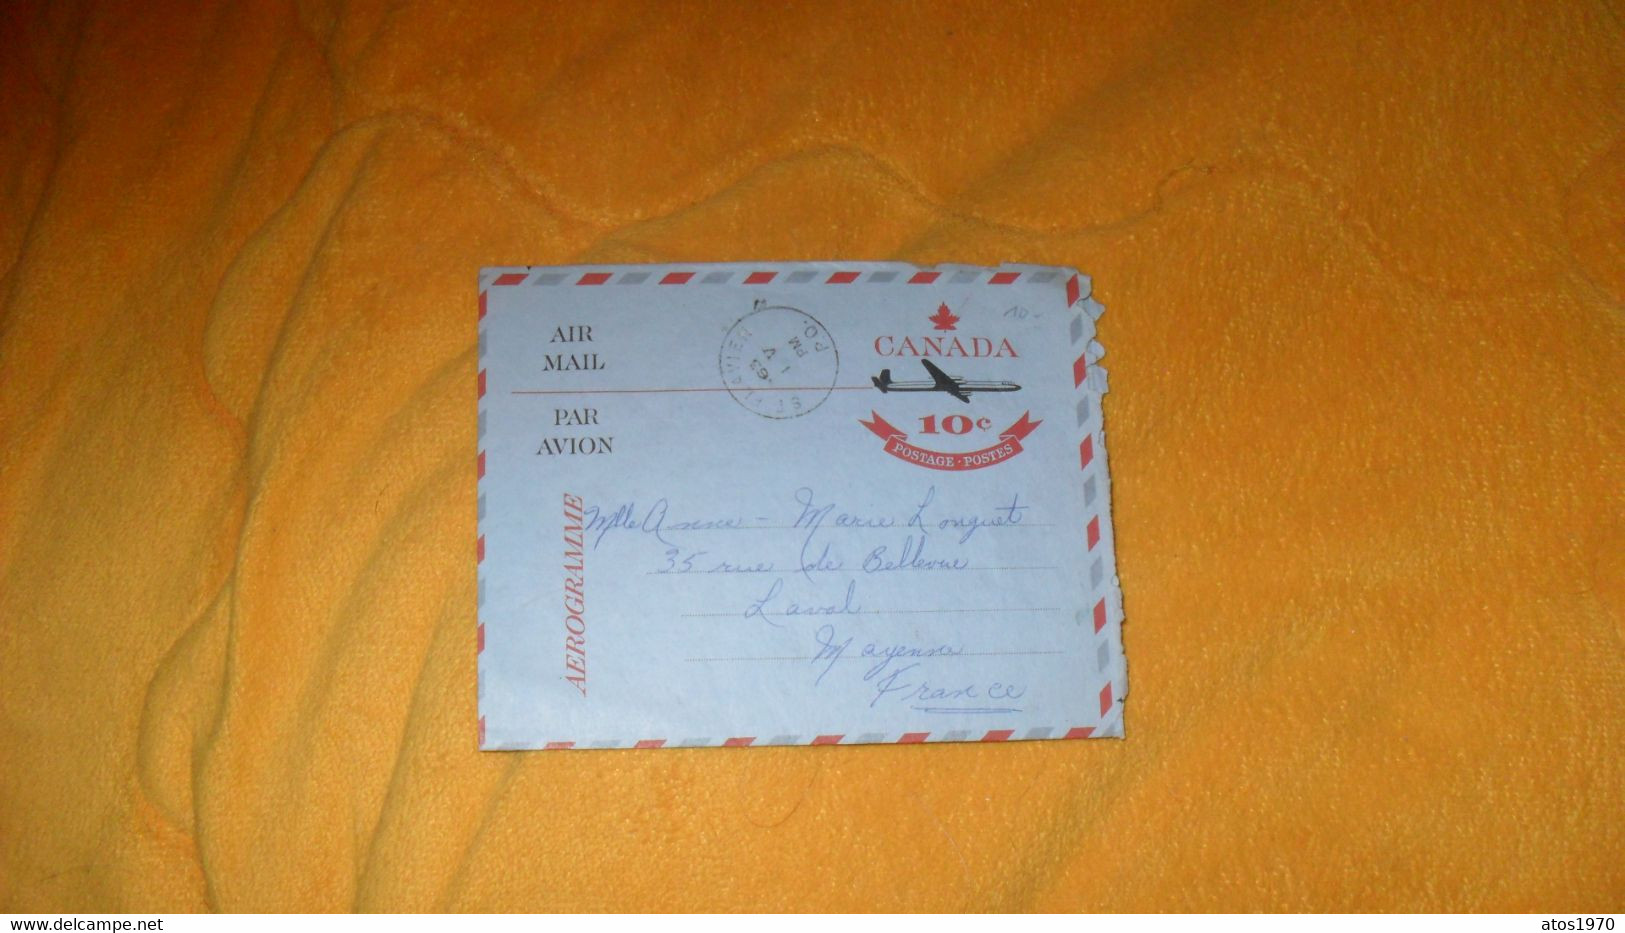 LETTRE ANCIENNE AEROGRAMME DE 1963../ CANADA 10C POSTAGE POSTES..CACHET ST FLAVIEN CANADA POUR LAVAL FRANCE - Briefe U. Dokumente